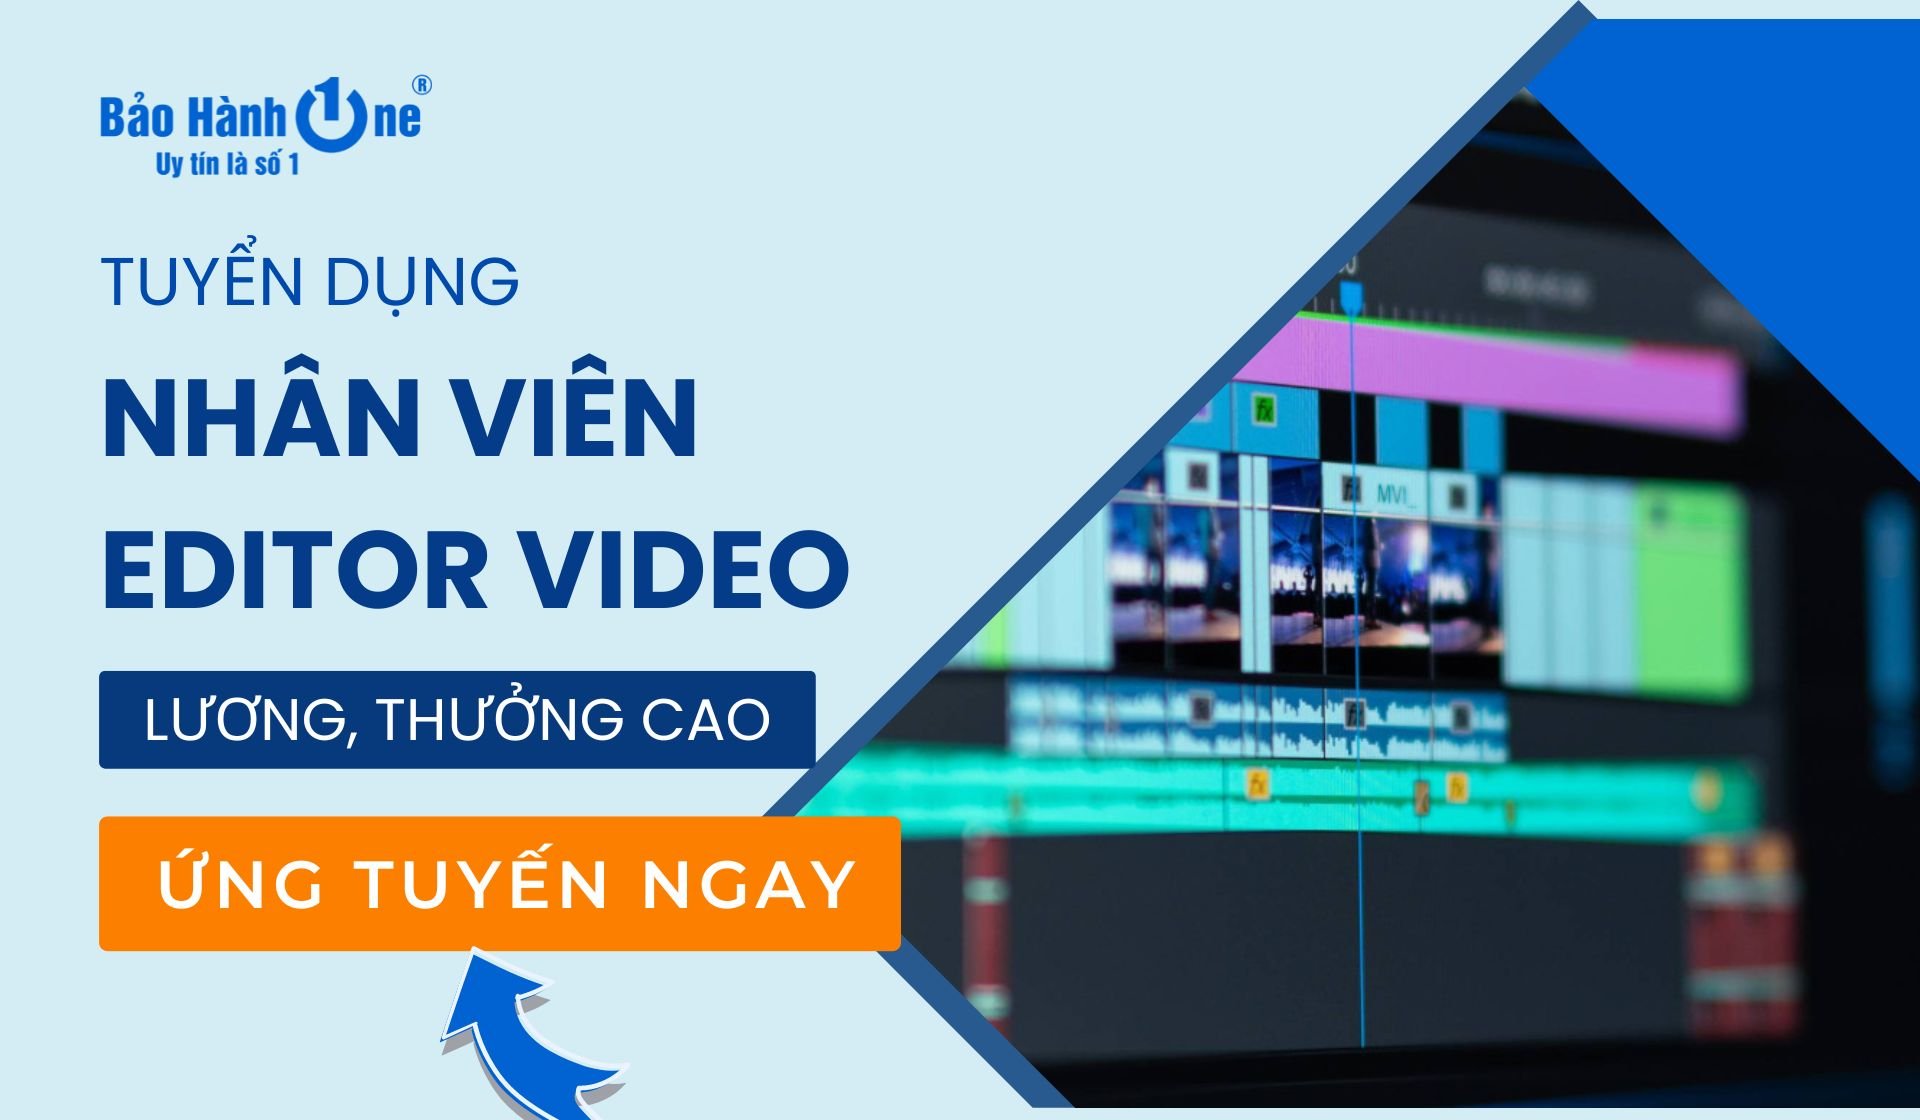 Tuyển dụng nhân viên Video Editor tại Quận 1, Quận 10, Quận Tân Phú